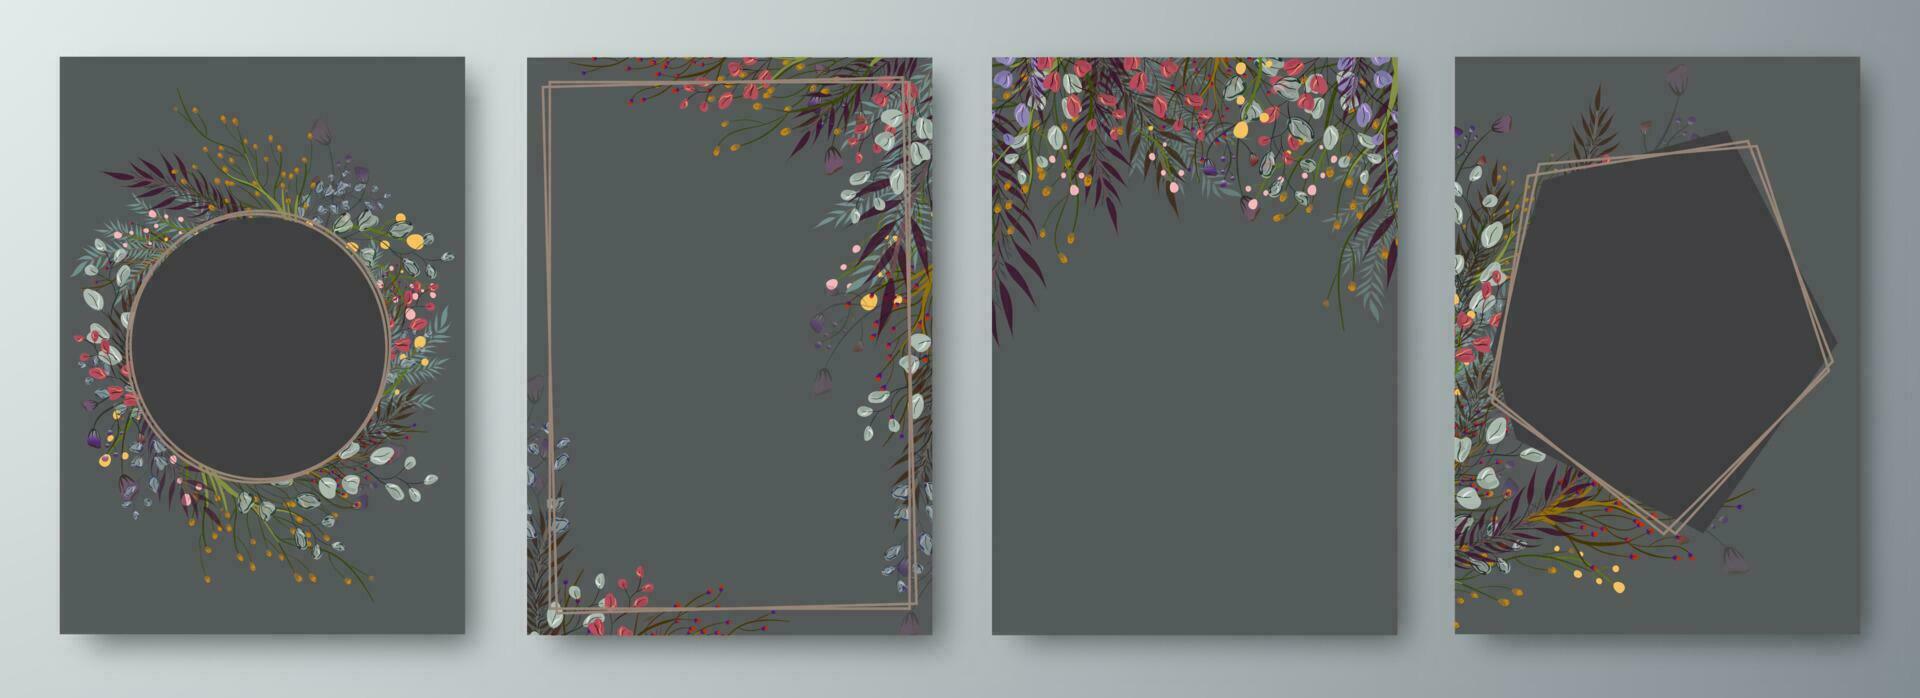 uppsättning av fyra inbjudan eller hälsning kort design dekorerad med blommor. vektor